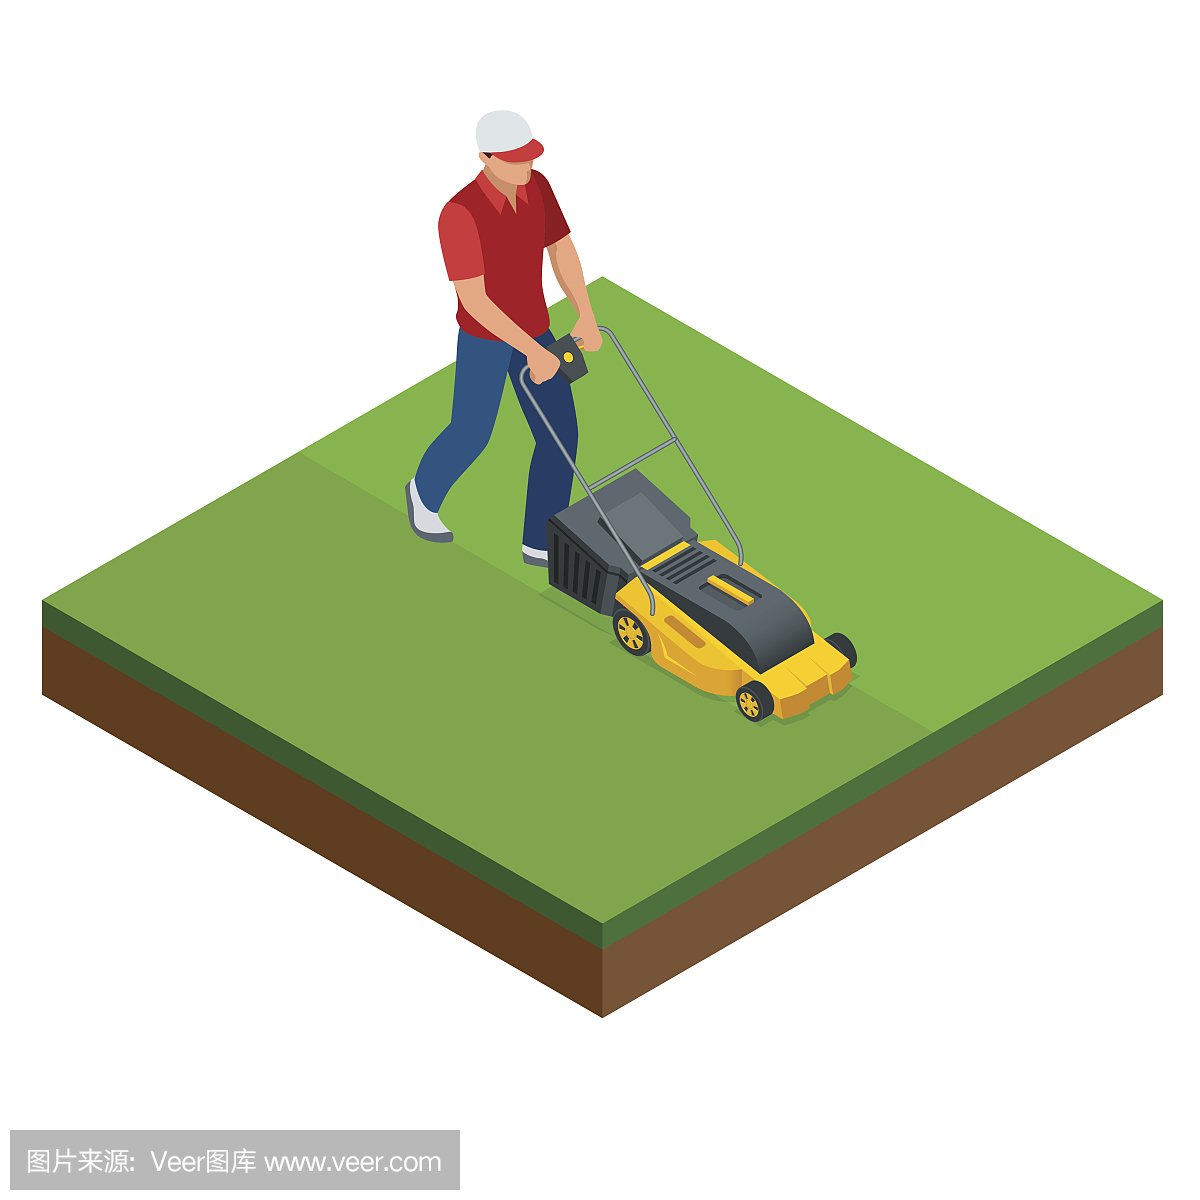 夏天,一个人正在用黄色的割草机割草坪。草坪草服务理念。等距矢量图